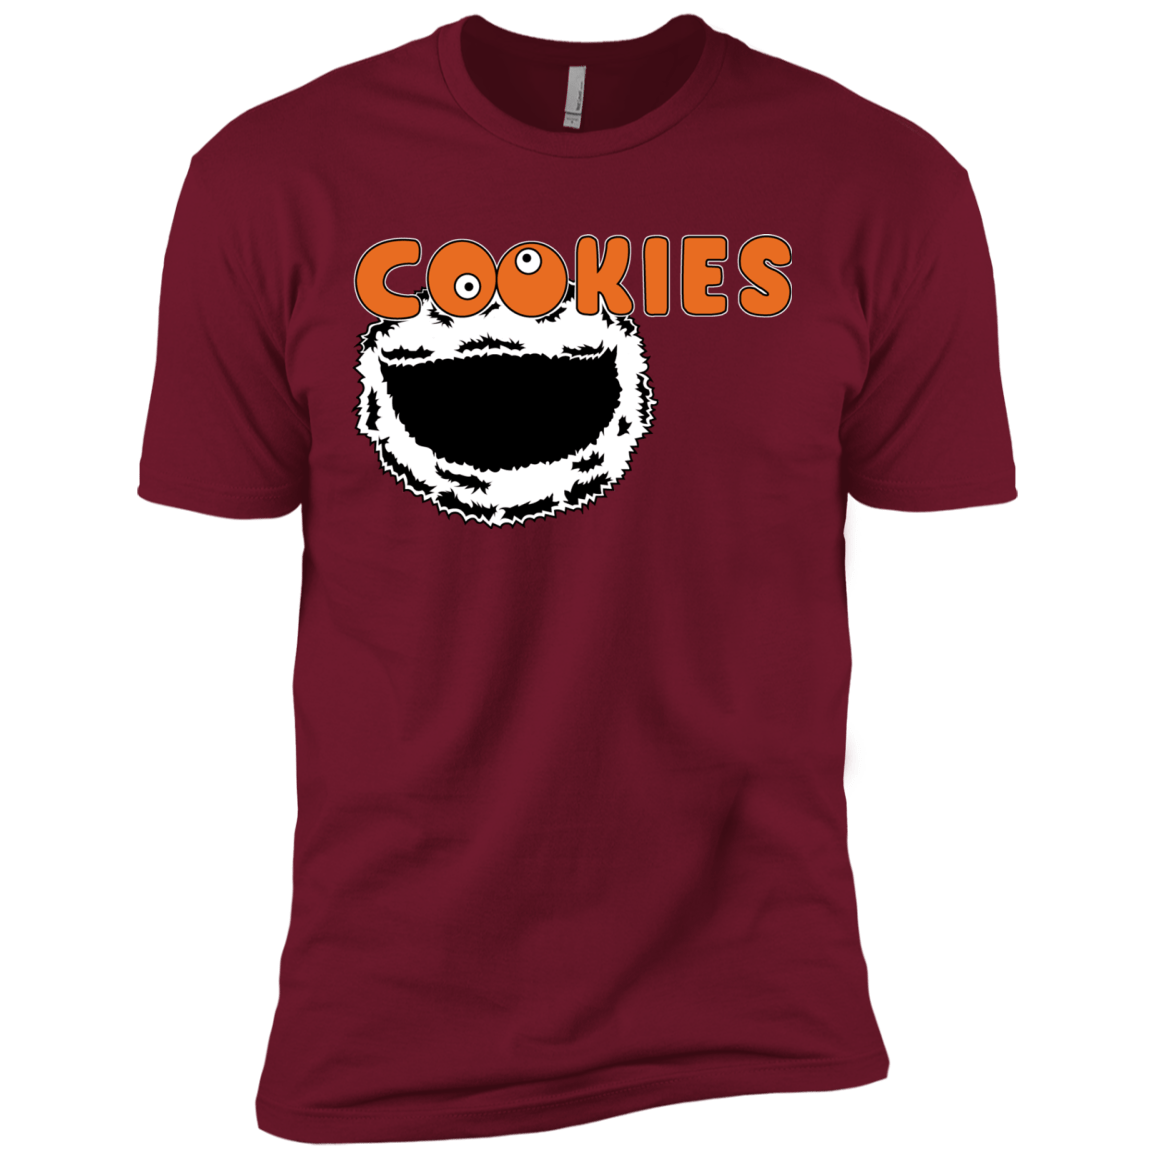 T-Shirts Cardinal / X-Small Cookies! Men's Premium T-Shirt